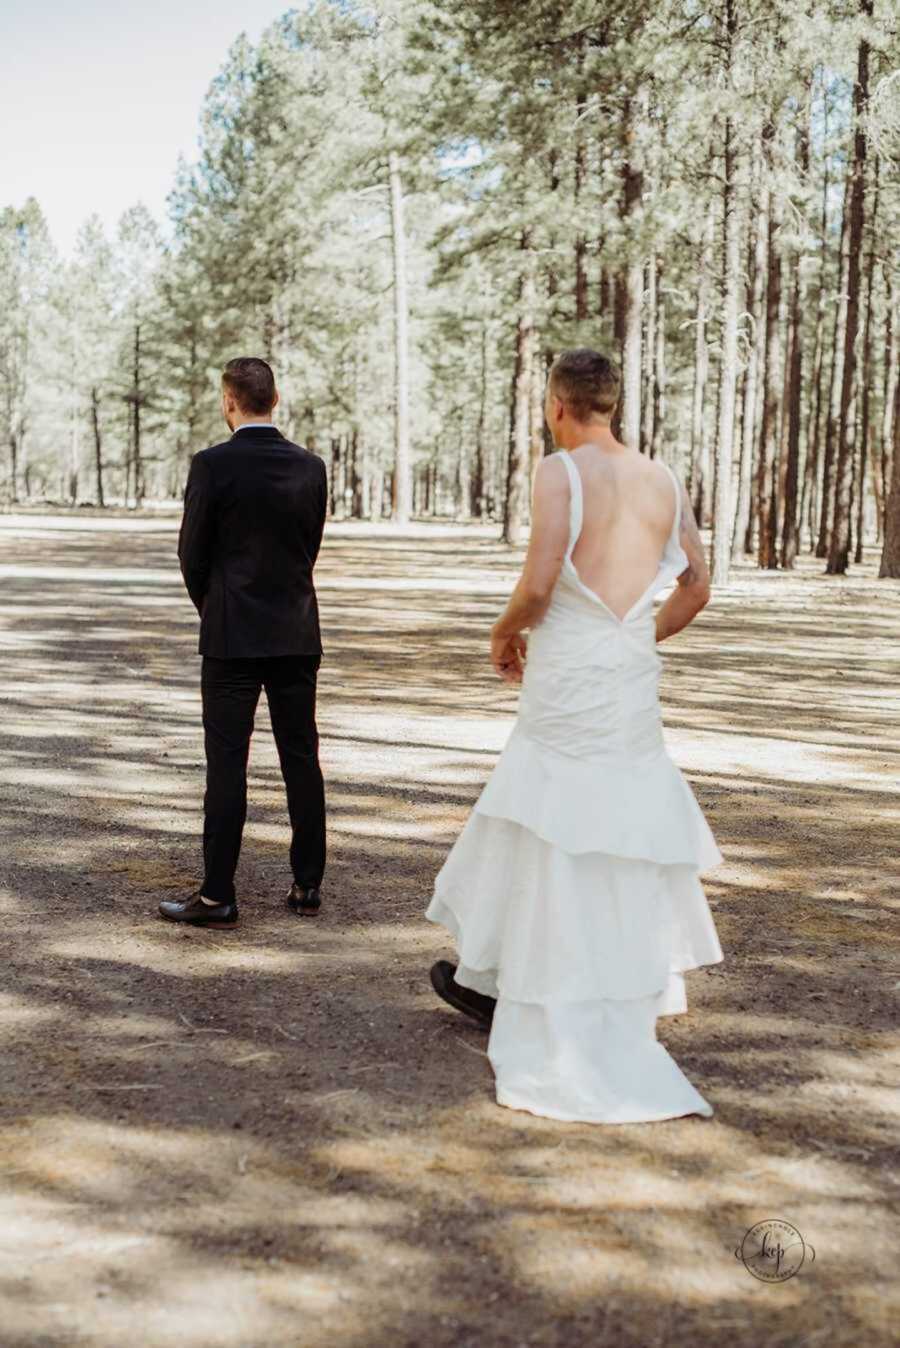 Man in wedding dress standing behind groom